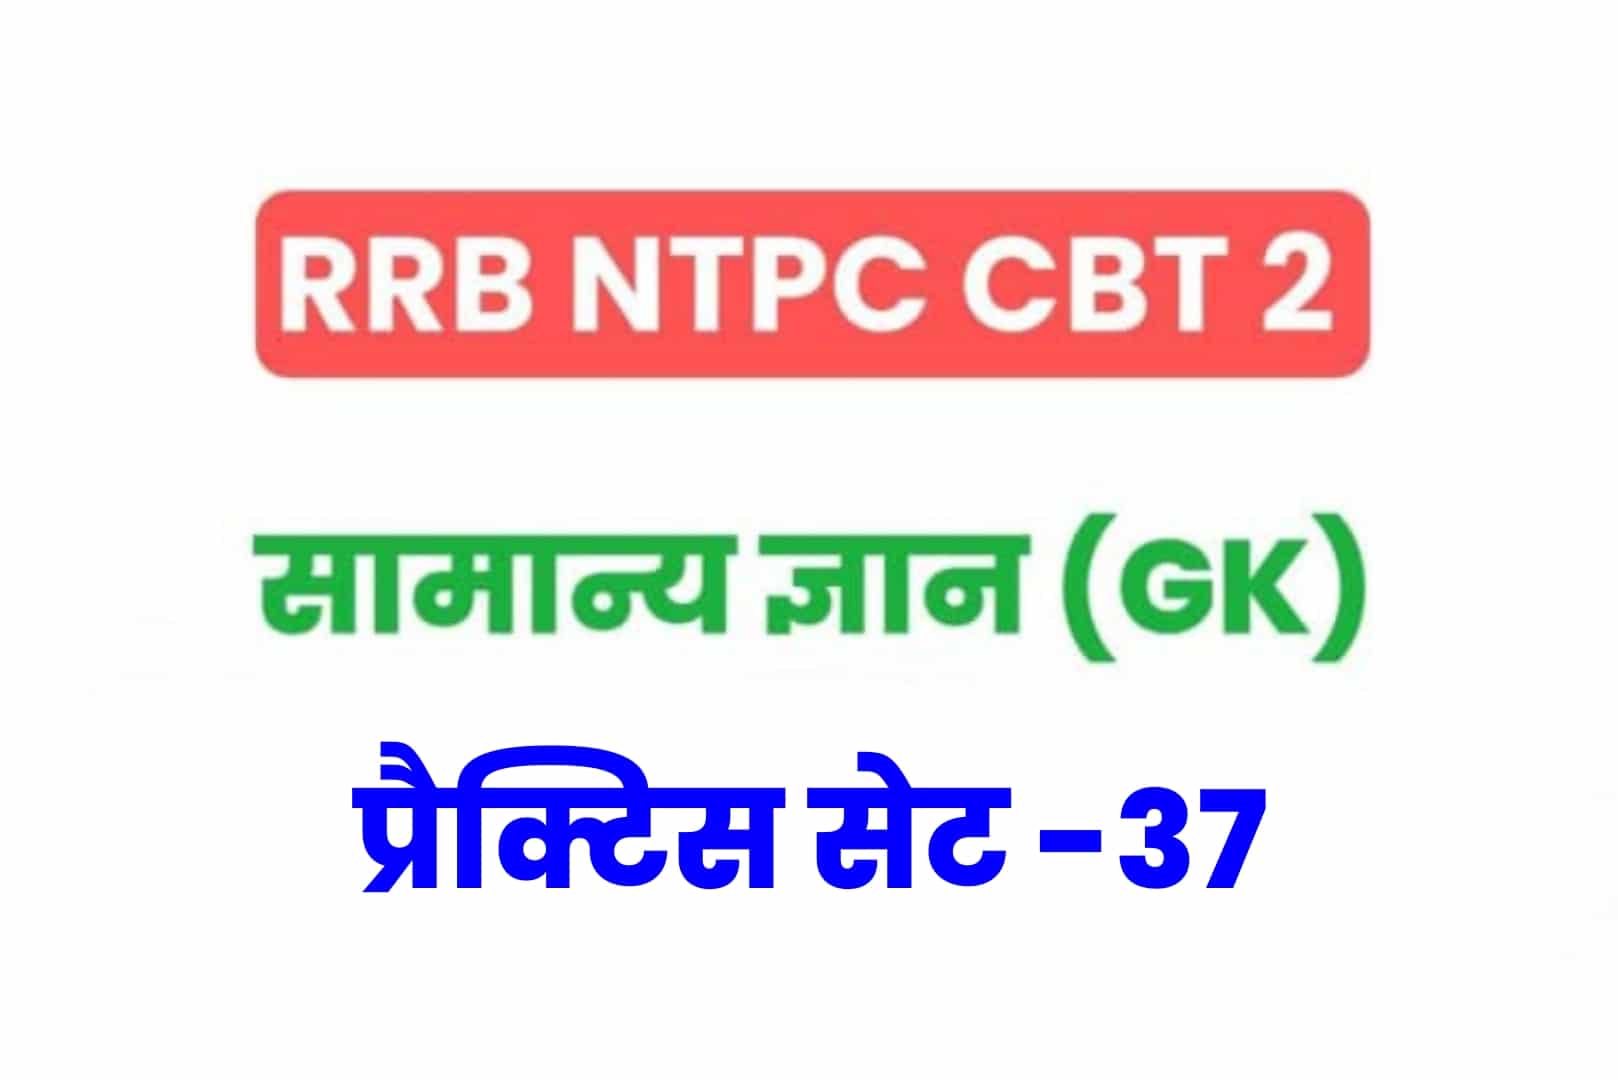 RRB NTPC CBT 2 GK प्रैक्टिस सेट 37: परीक्षा में शामिल होनें से पूर्व जरूर देखें सामान्य ज्ञान के 25 मुख्य MCQ